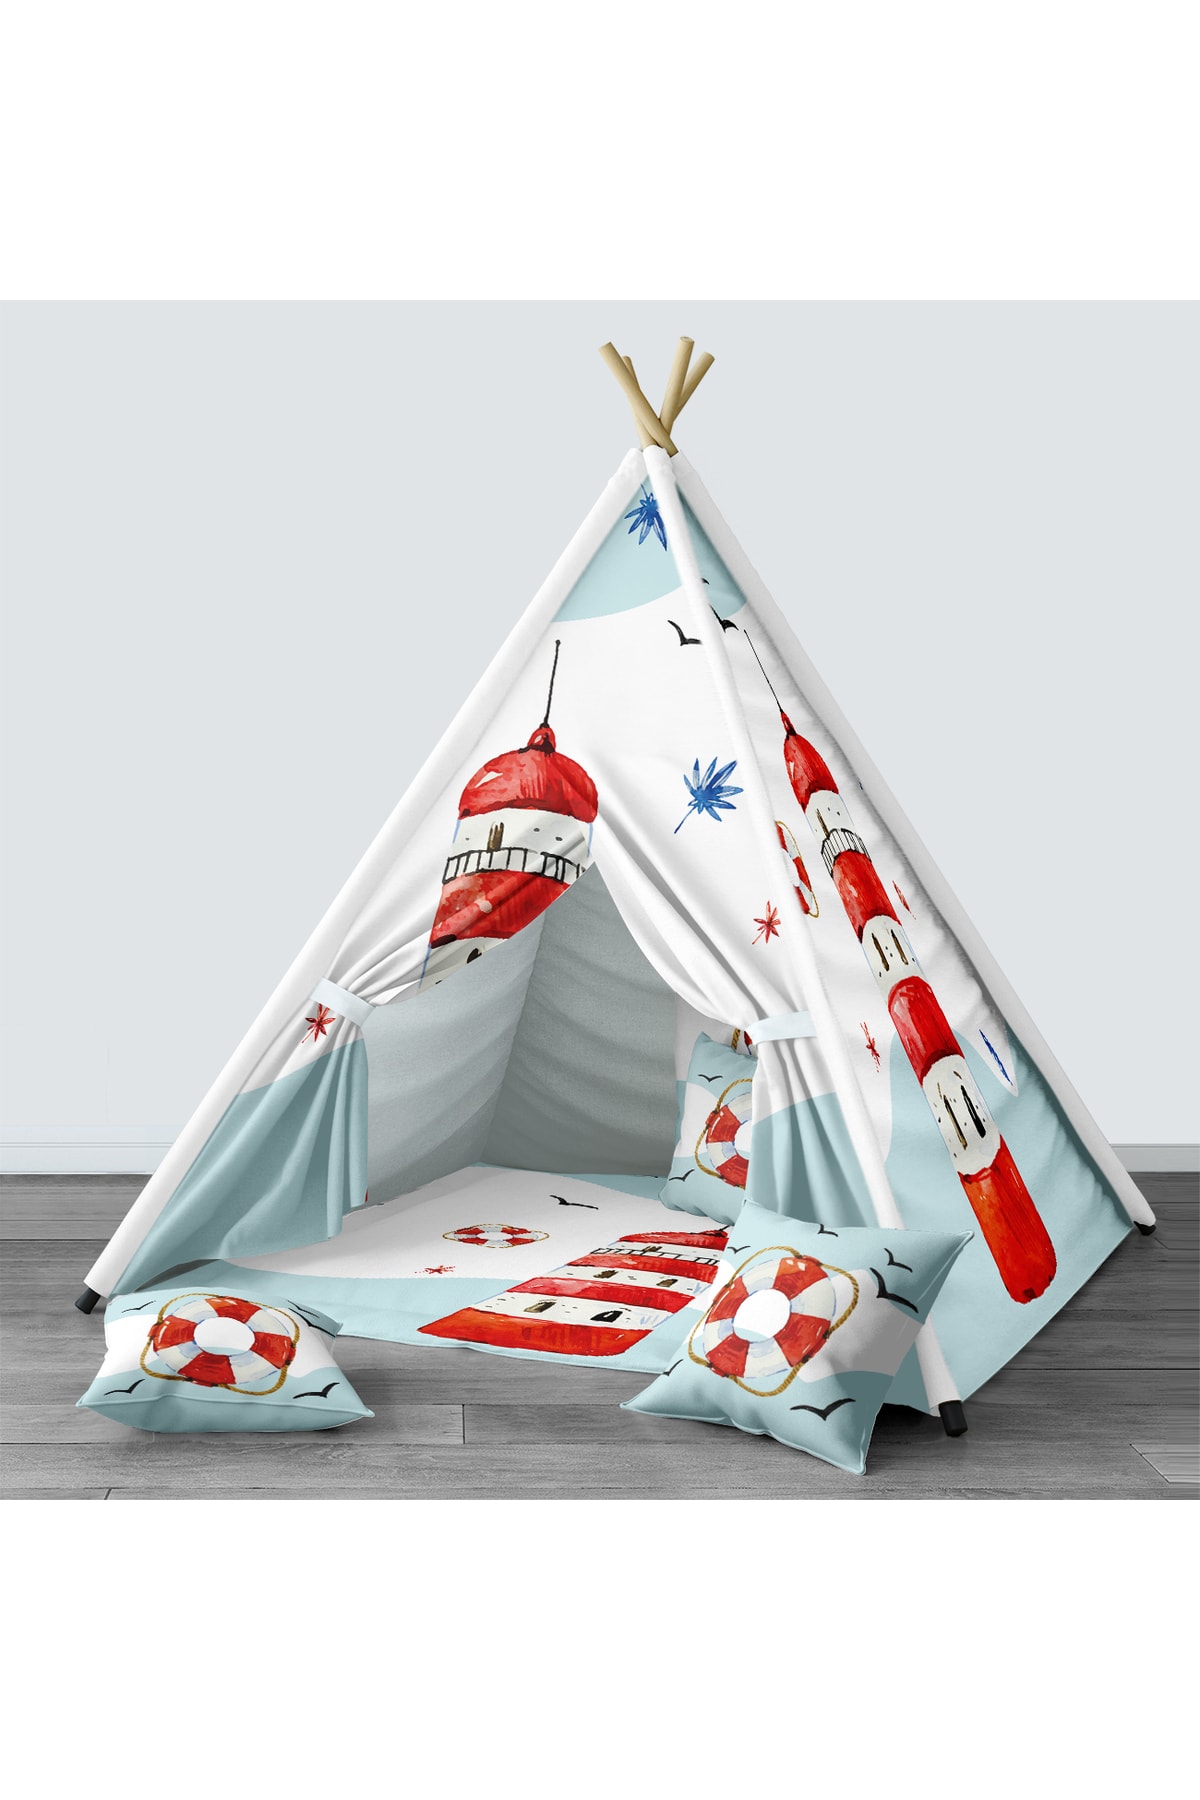 Tinybabyconcept Çocuk Odası Kızıldereli Çadır Katlanabilir Çocuk Oyun Çadırı Oyun Evi Denizci Desenli 031